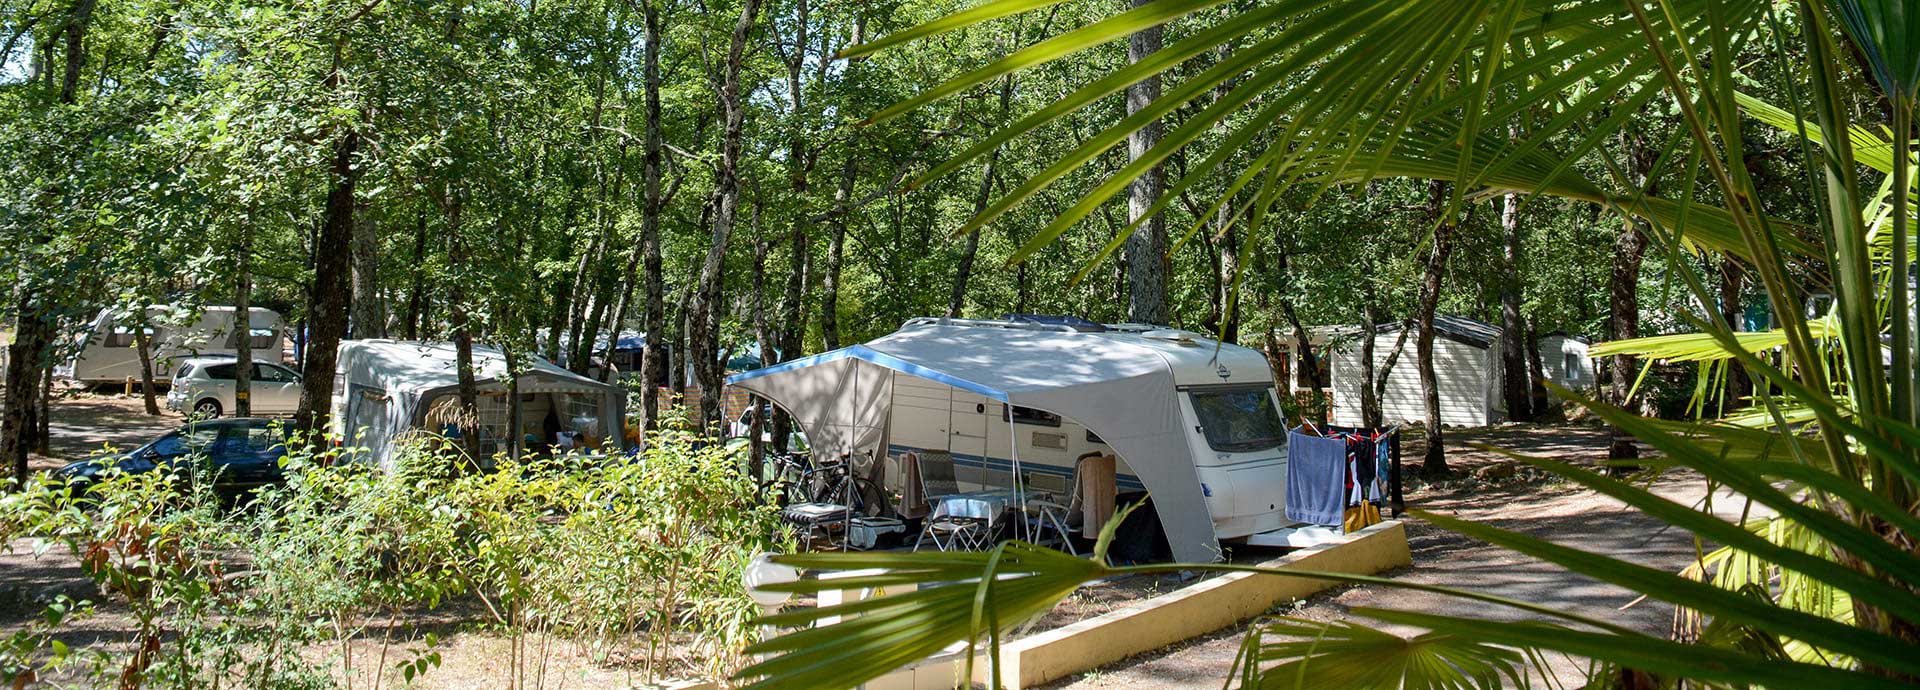 De kampeerplaatsen van camping Le Parc liggen in het midden van ons 3,5 hectare grote bosrijke terrein.